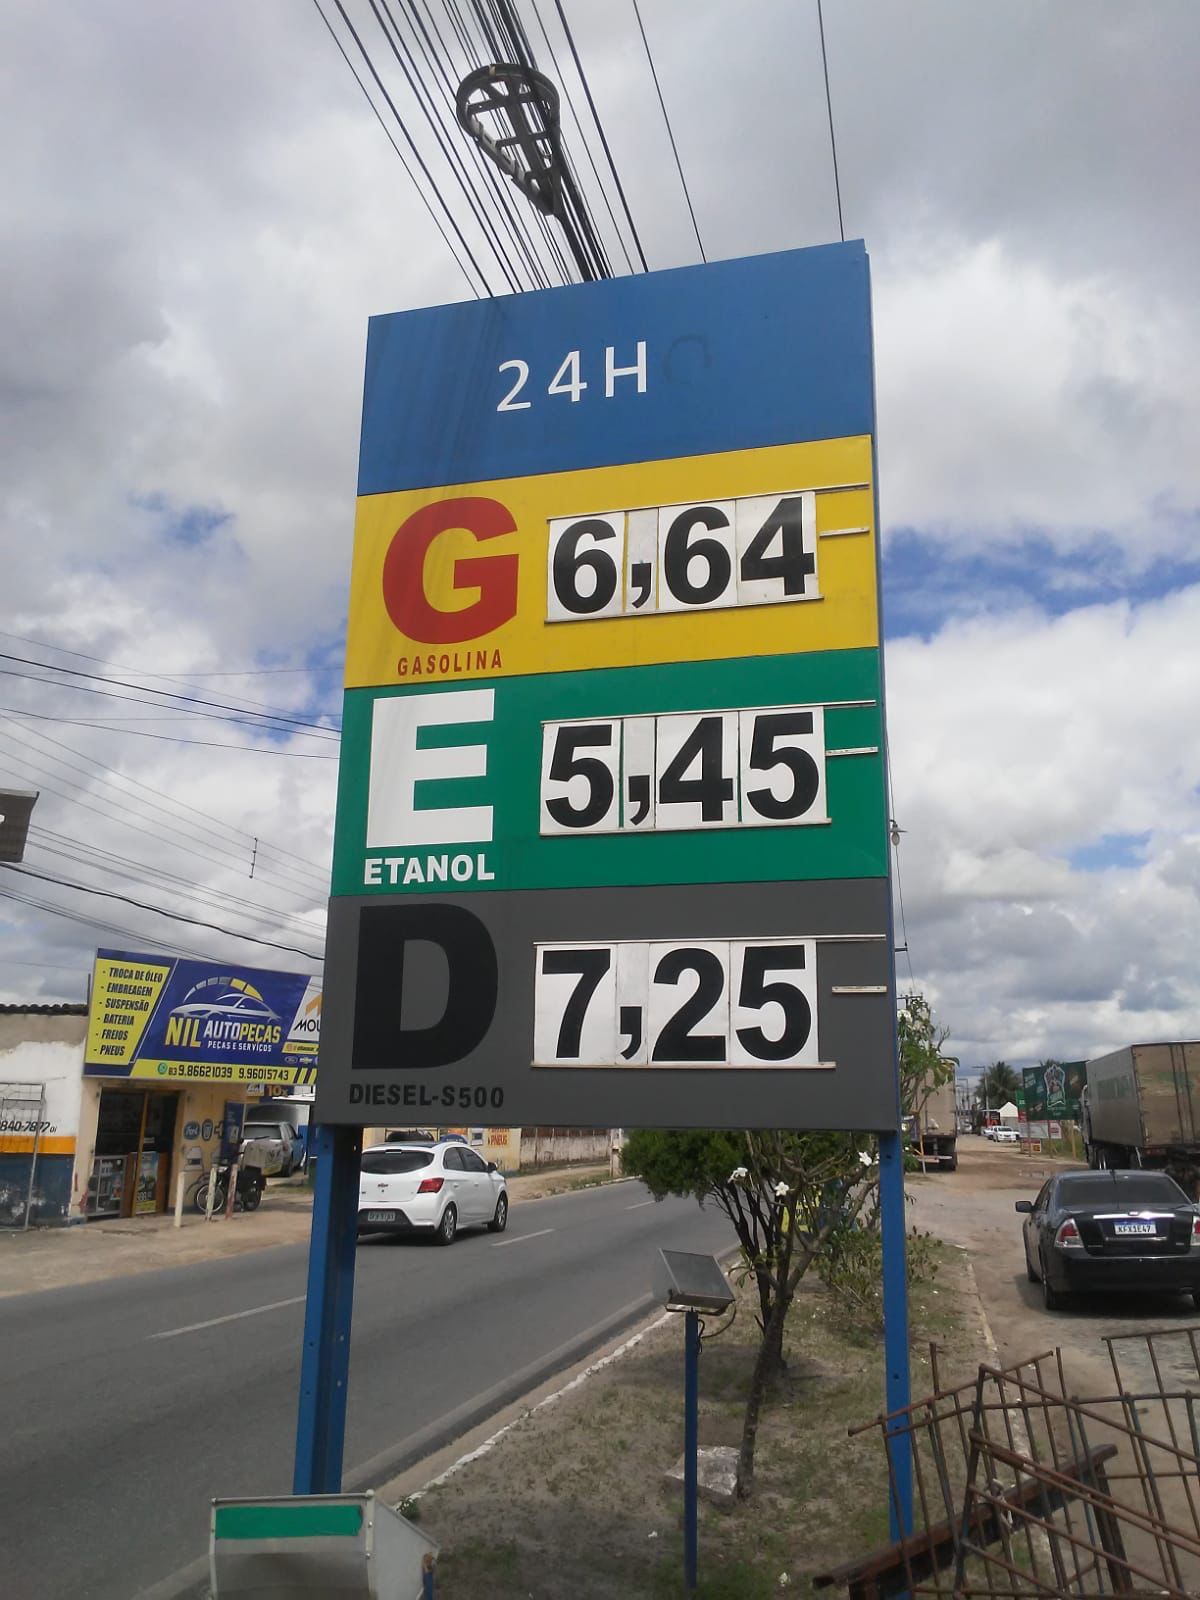 Pesquisa aponta que gasolina mais barata da Grande João Pessoa é encontrada em Santa Rita; Diferença com JP chega a R$ 0,73